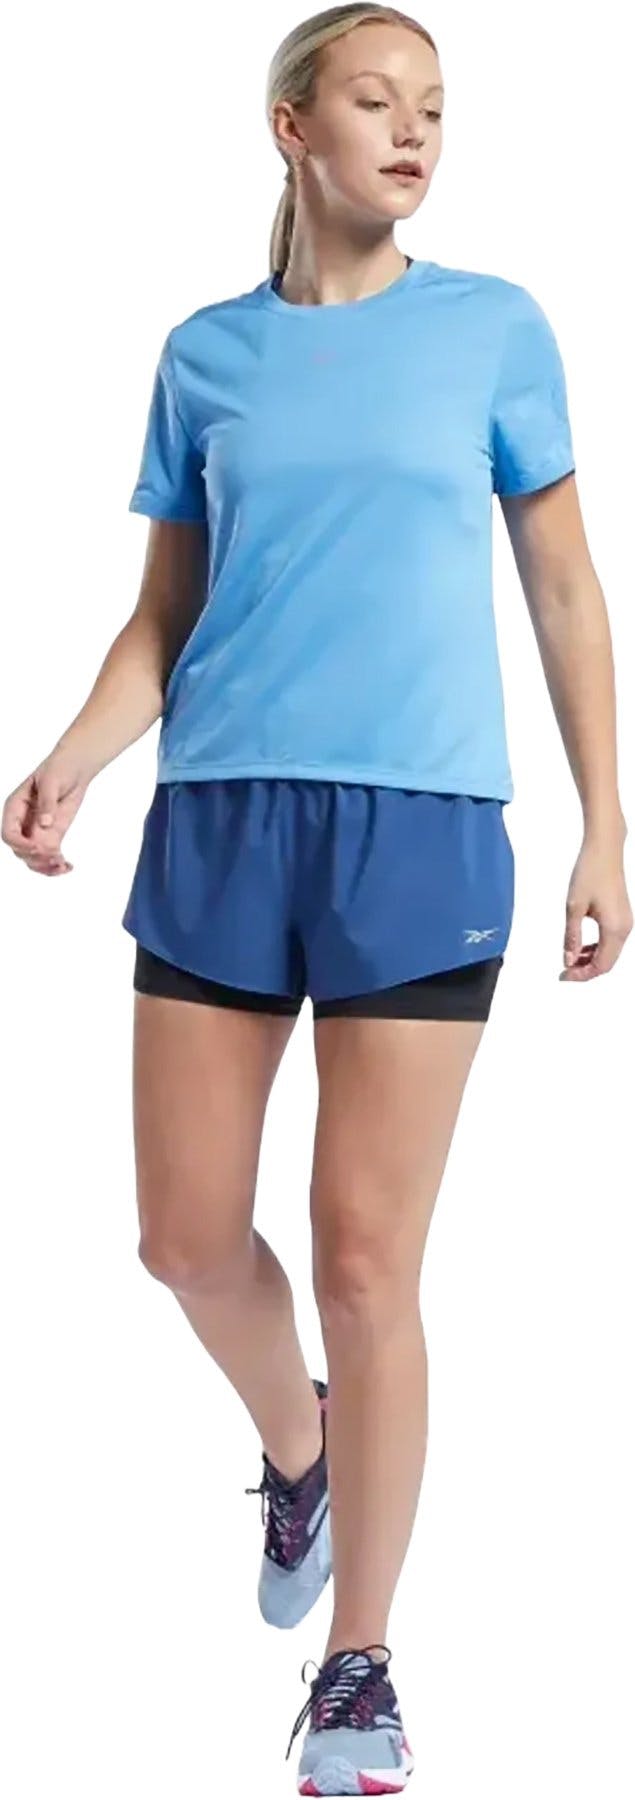 Numéro de l'image de la galerie de produits 1 pour le produit T-Shirt Workout Ready Run Speedwick - Femme